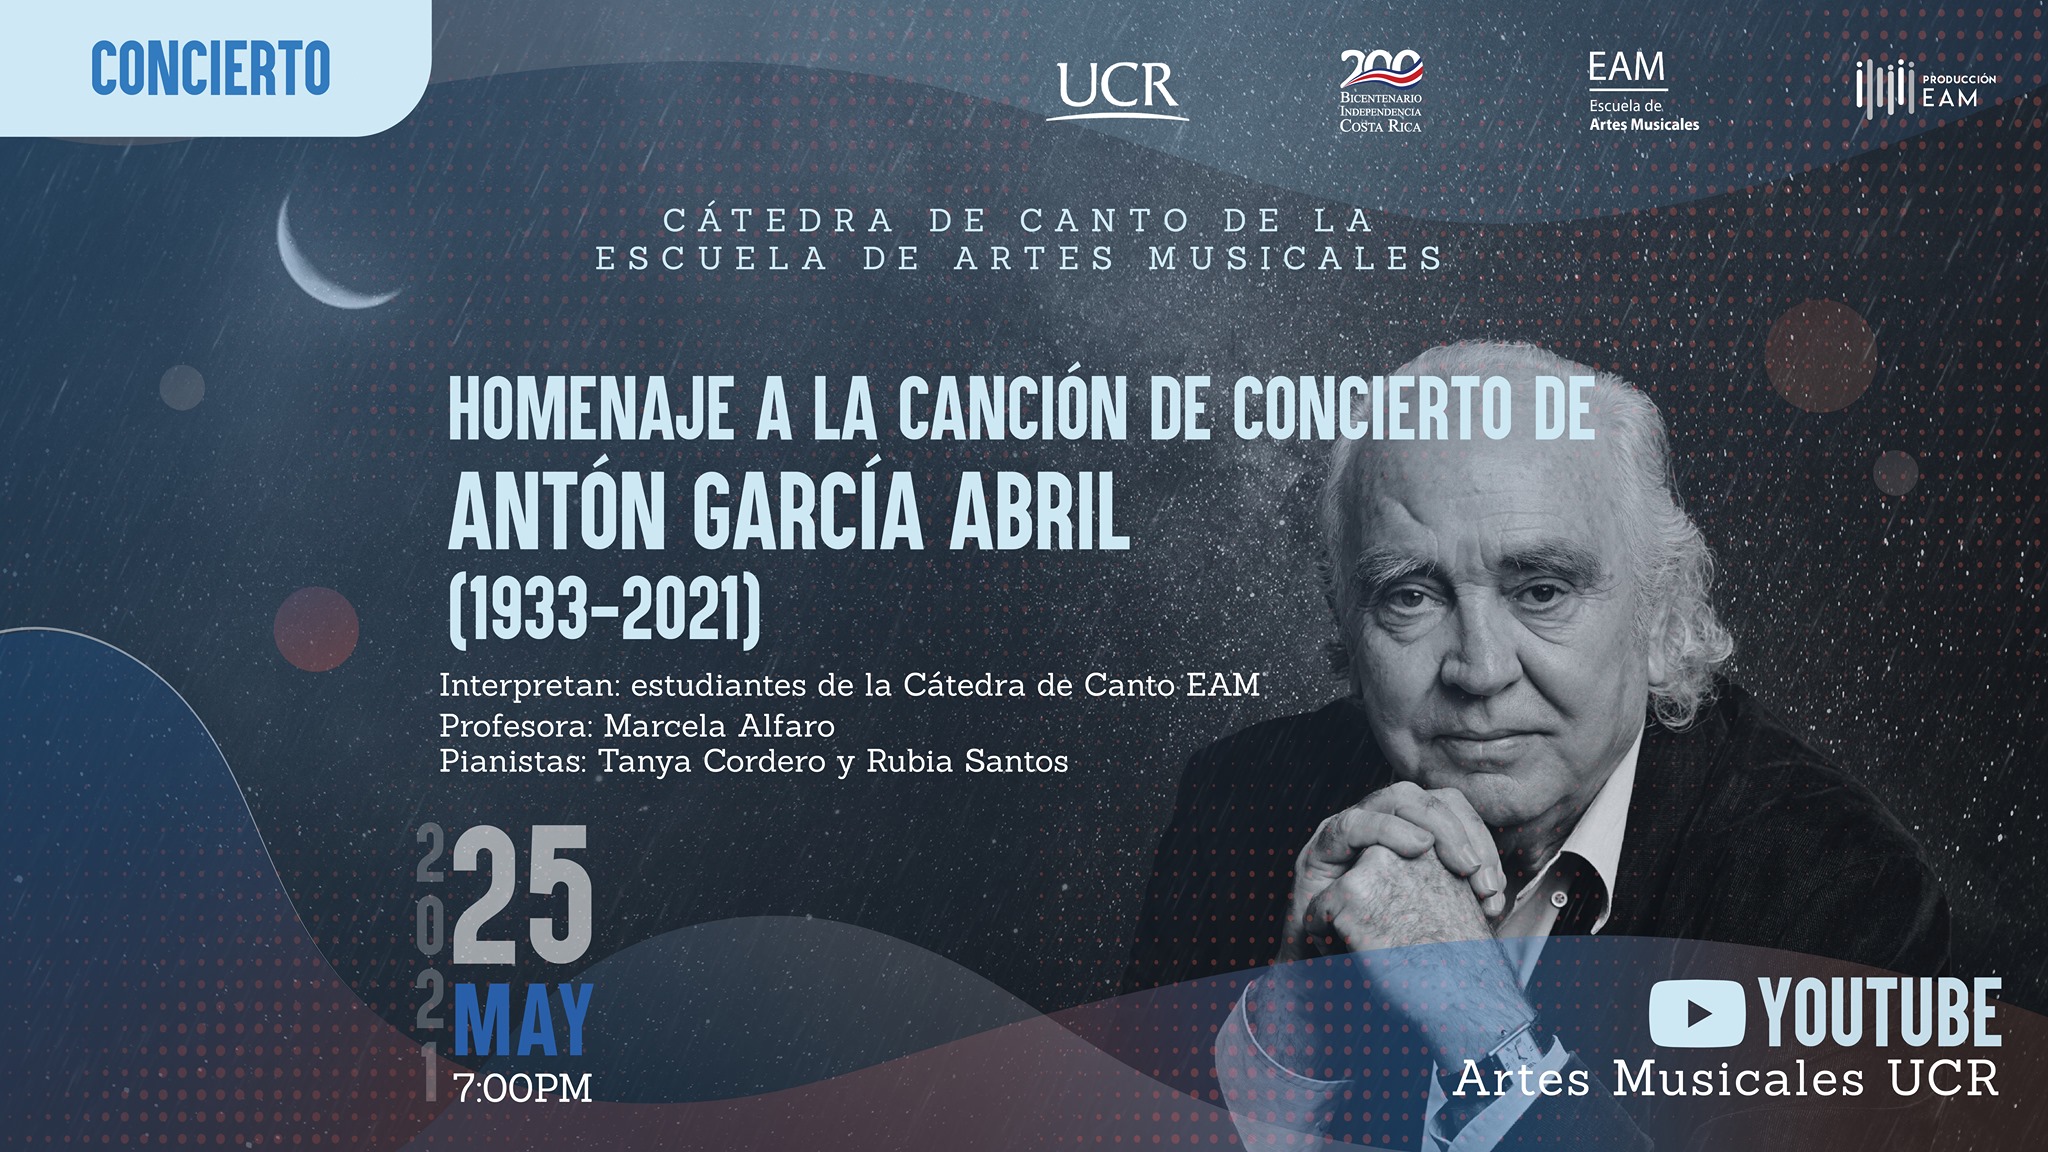 Homenaje a la Canción de Concierto de Antón García Abril (1933-2001)